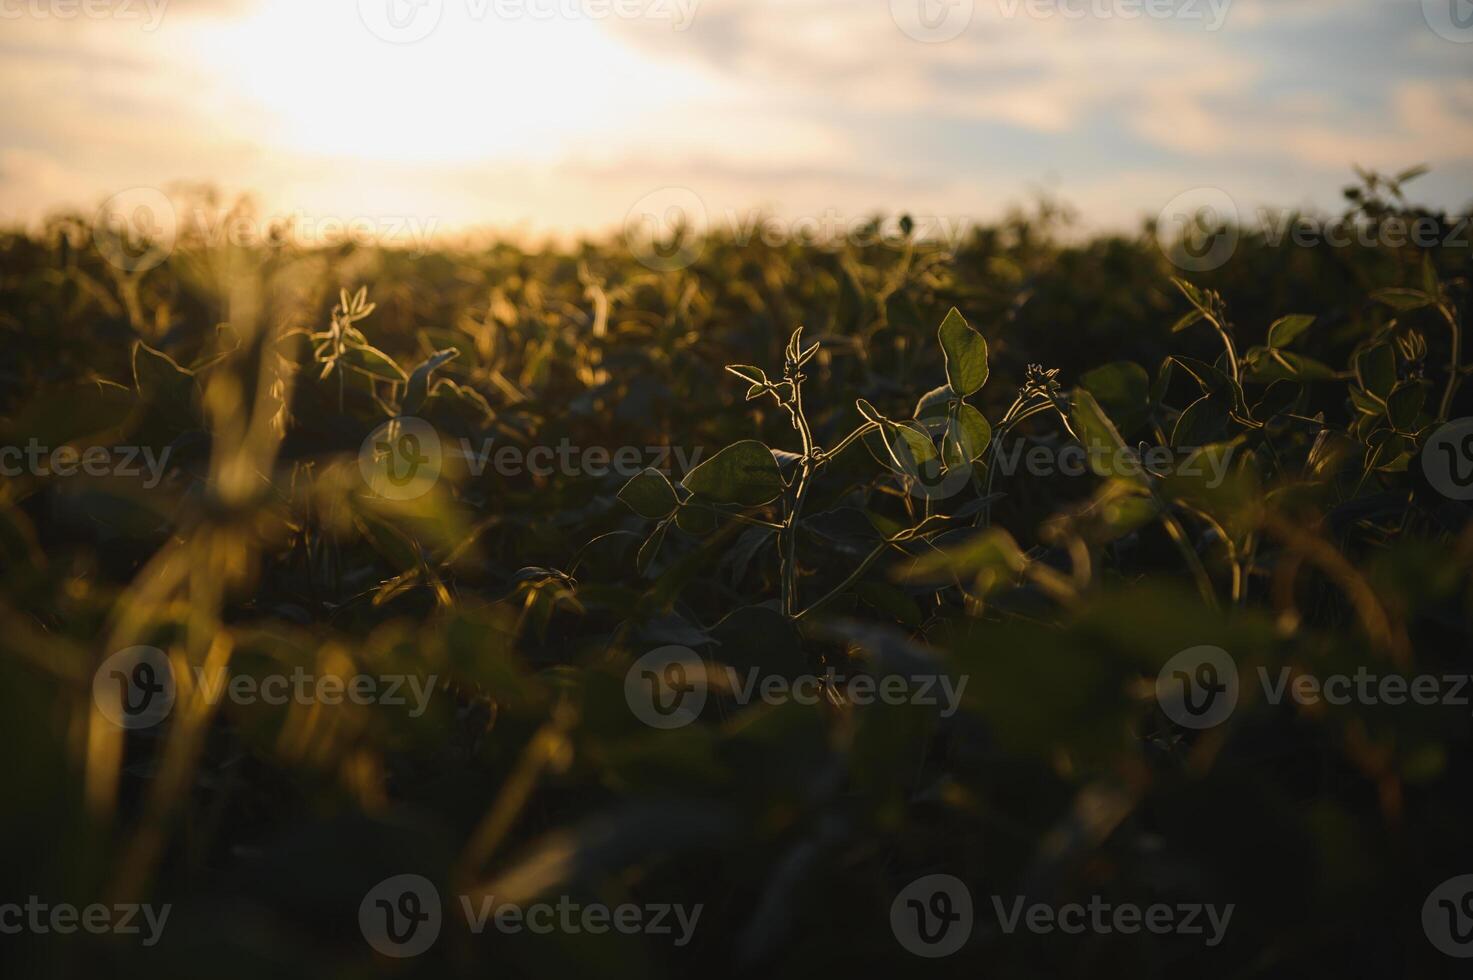 sojaböna fält, grön fält, lantbruk landskap, fält av sojaböna på en solnedgång himmel bakgrund foto